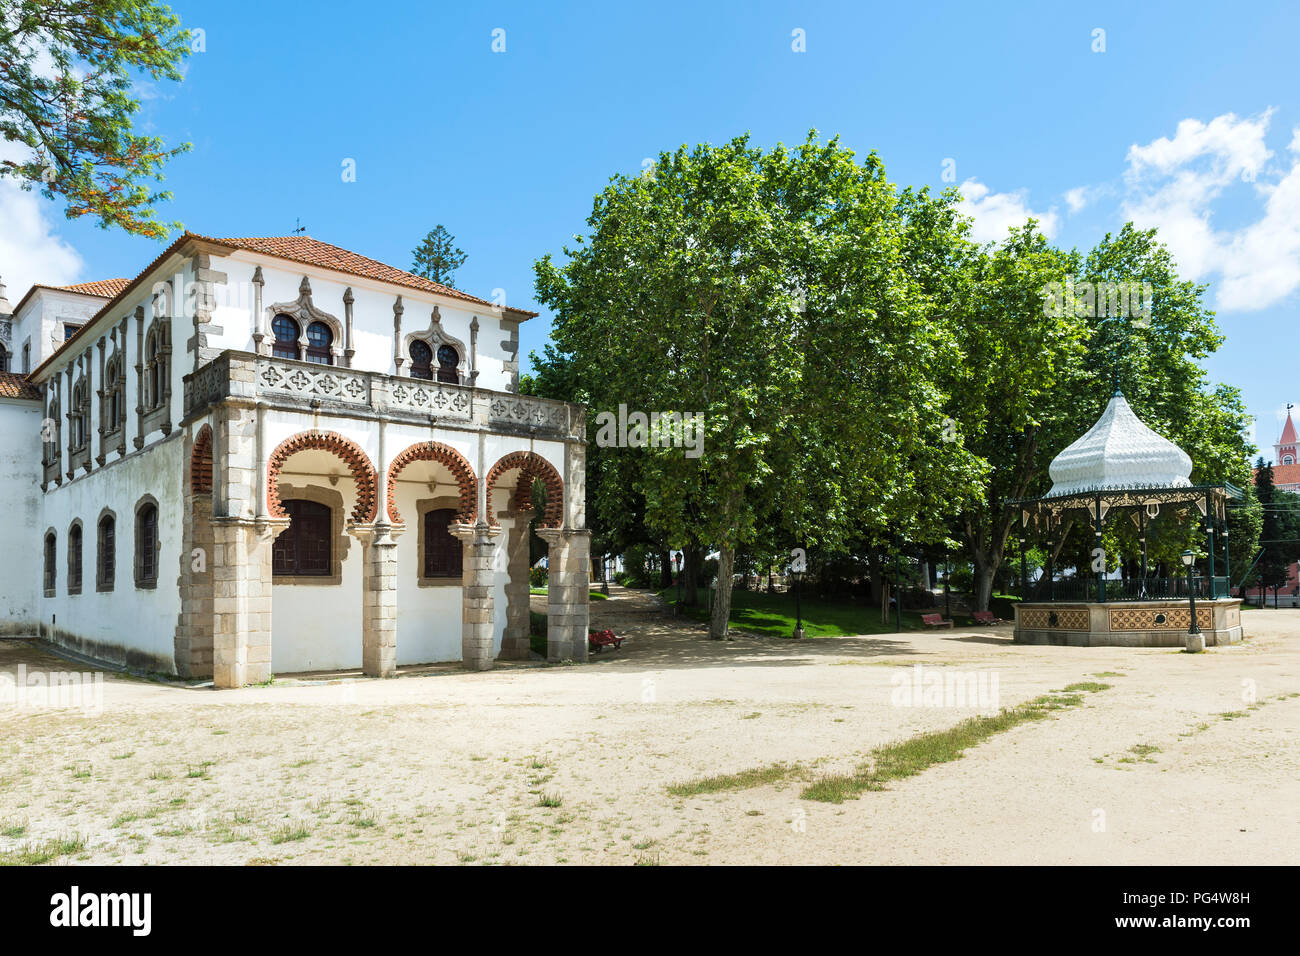 Don Manuel palais Royal, pavillon, Jardin Public Merendas, UNESCO World Heritage Site, Evora, Alentejo, Portugal Banque D'Images